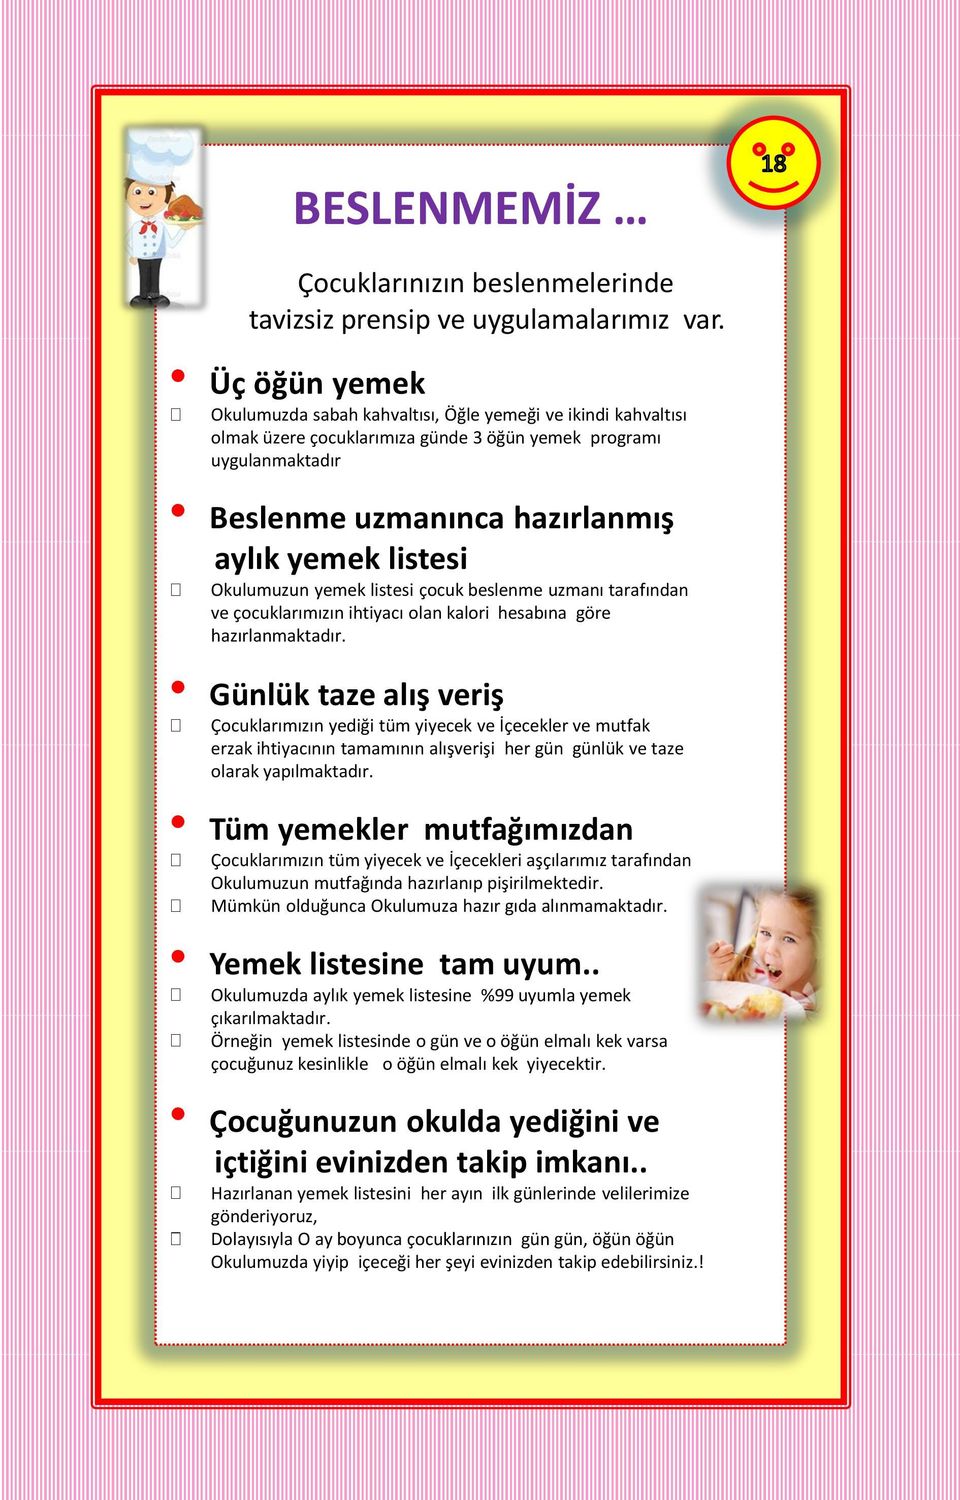 Okulumuzun yemek listesi çocuk beslenme uzmanı tarafından ve çocuklarımızın ihtiyacı olan kalori hesabına göre hazırlanmaktadır.